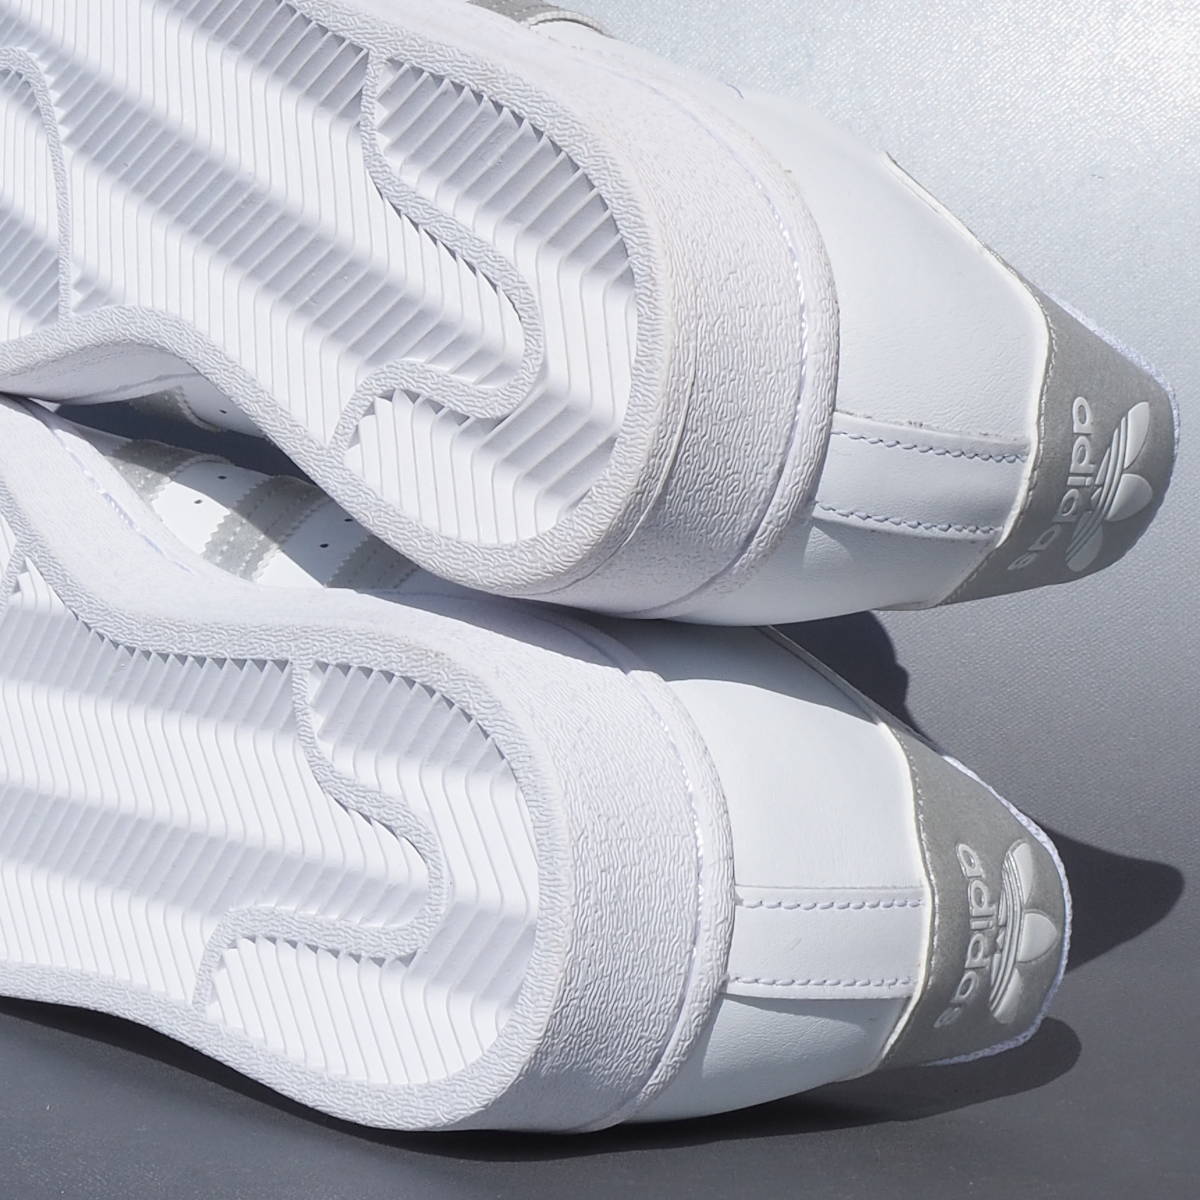 デッド!! US 8 1/2 /26.5cm 新品 2021年 adidas Originals スーパースター 白x銀 銀ベロ 天然皮革 スニーカー_画像7